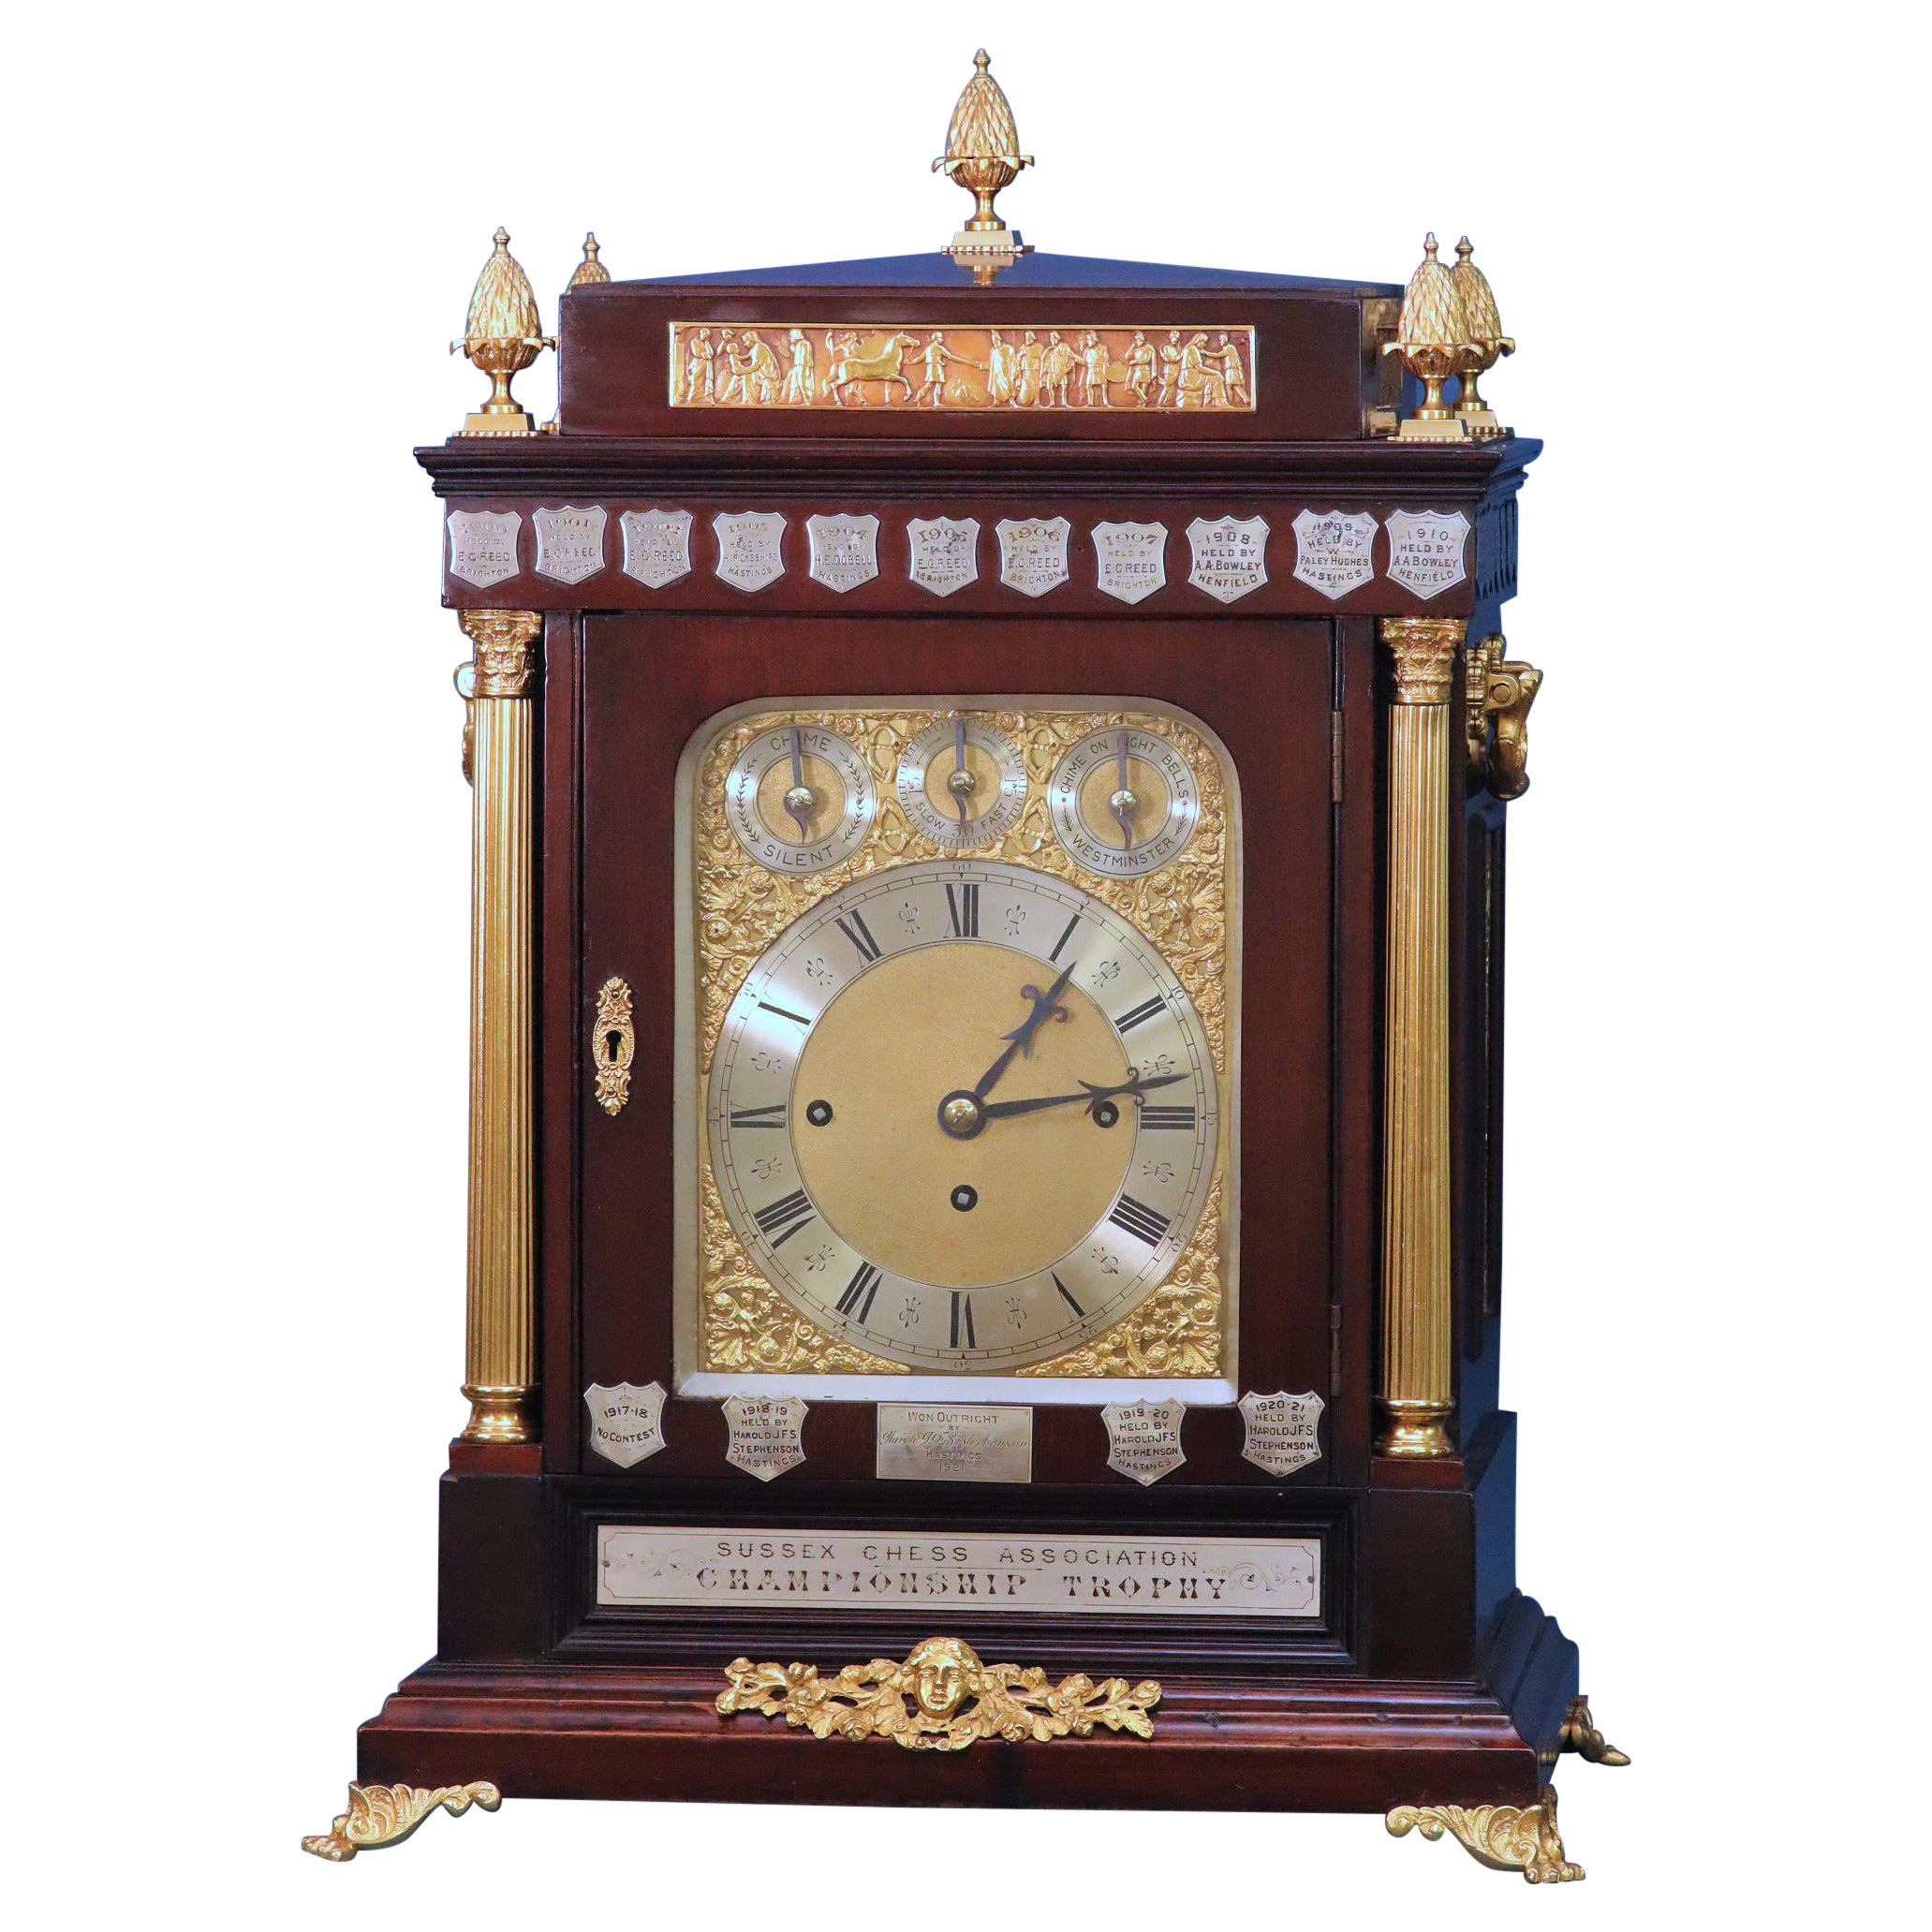 Rare horloge à support pour trophée d'échecs anglaise de la fin du 19e siècle.